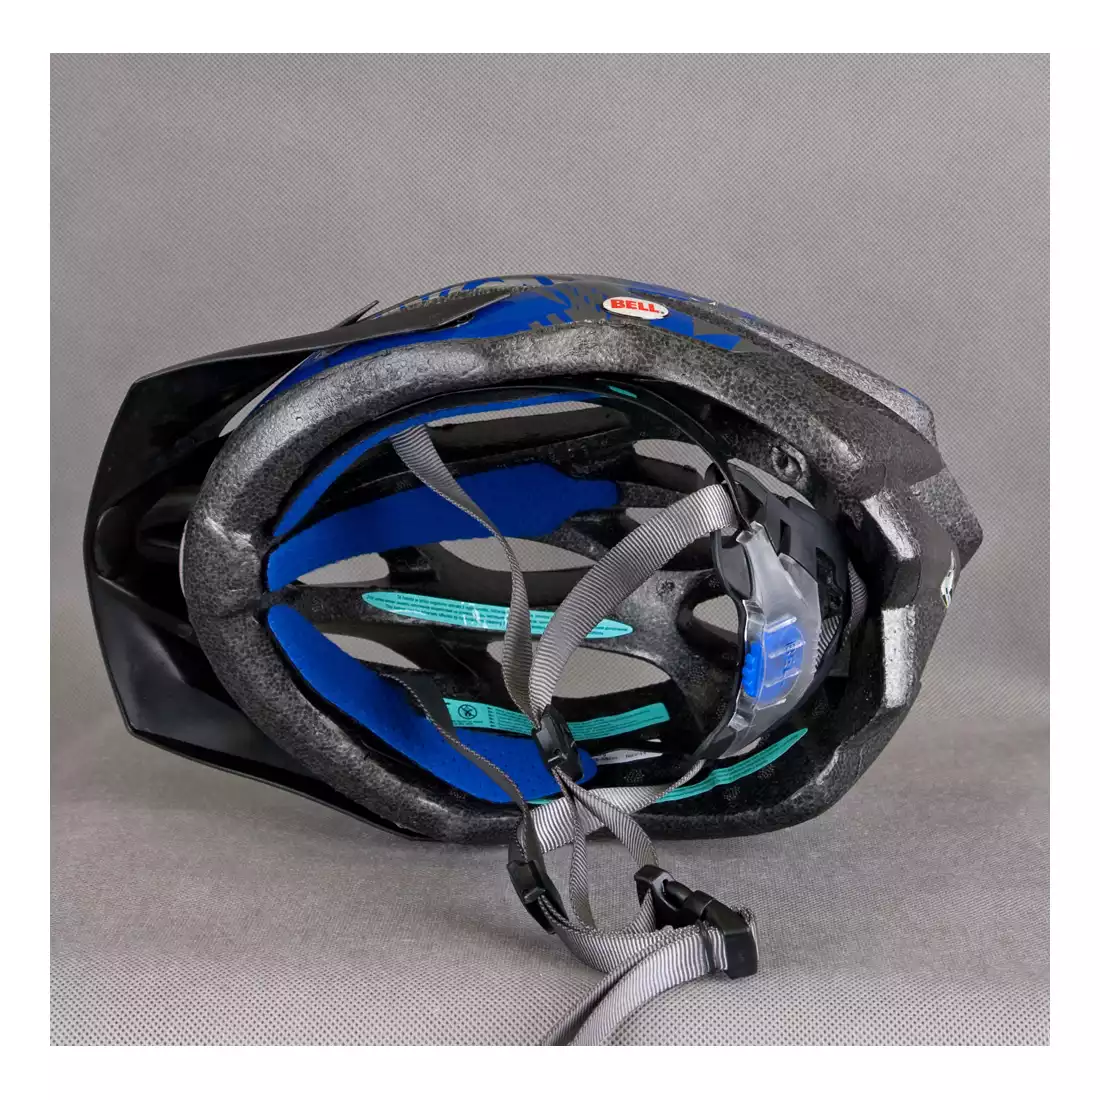 BELL - kask rowerowy DELIRIUM niebieski-tytan